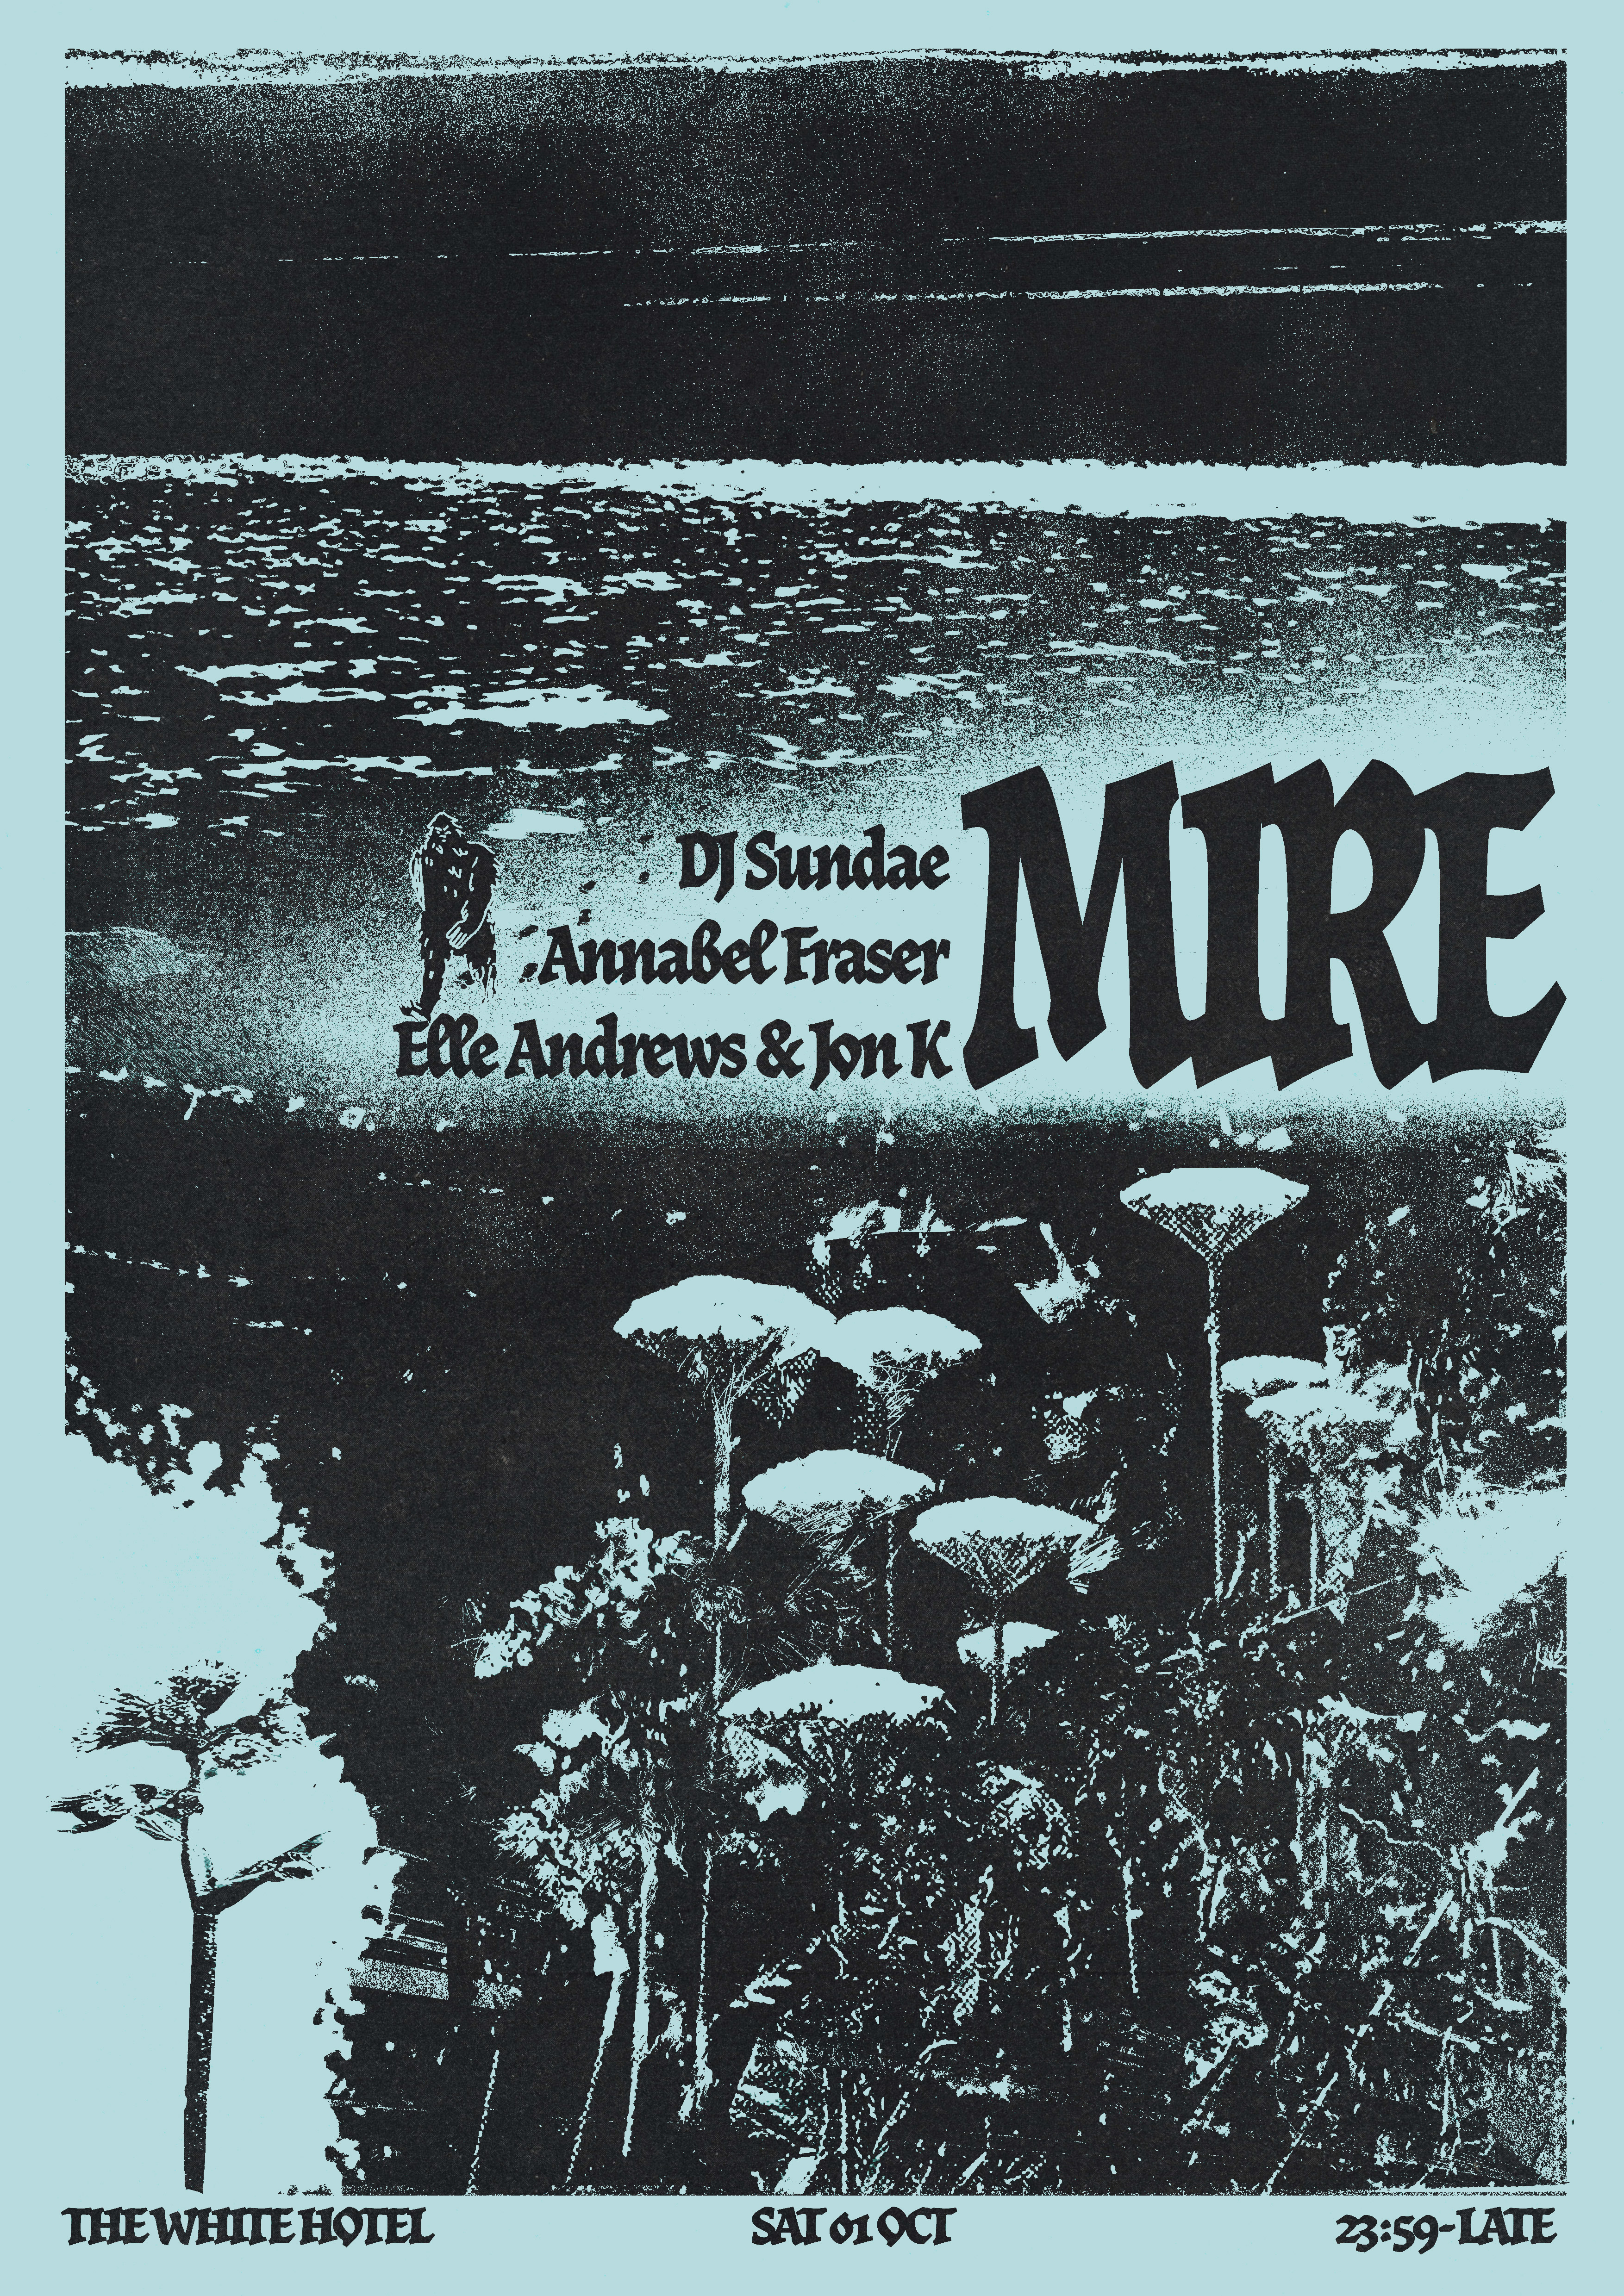 MIRE with DJ Sundae / Jon K & Elle Andrews / Annabel Fraser - Flyer front